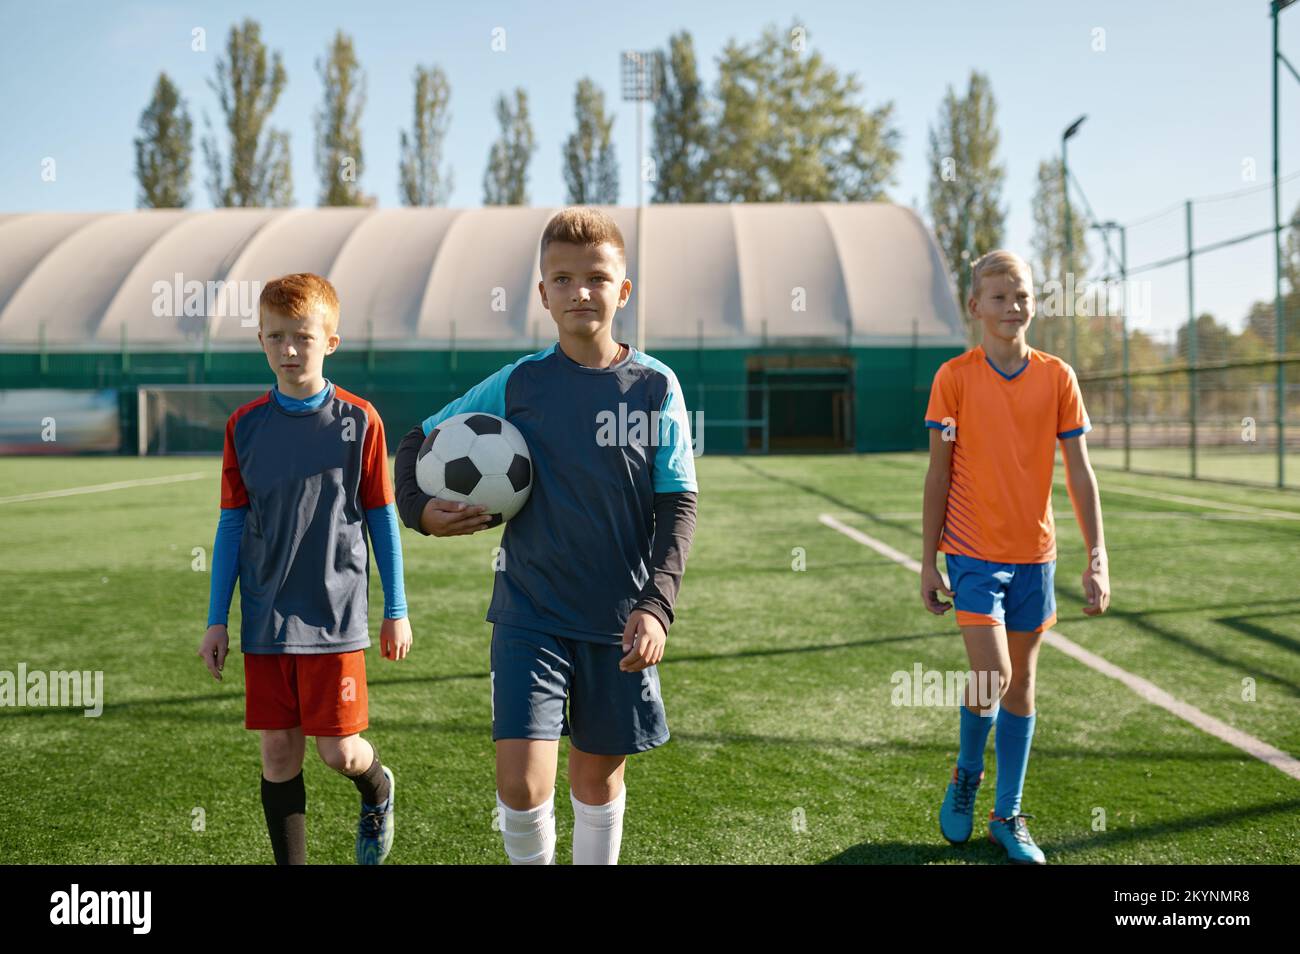 Porträt eines seriösen jungen Fußballspielers, der mit Teamkollegen auf dem Spielfeld steht Stockfoto